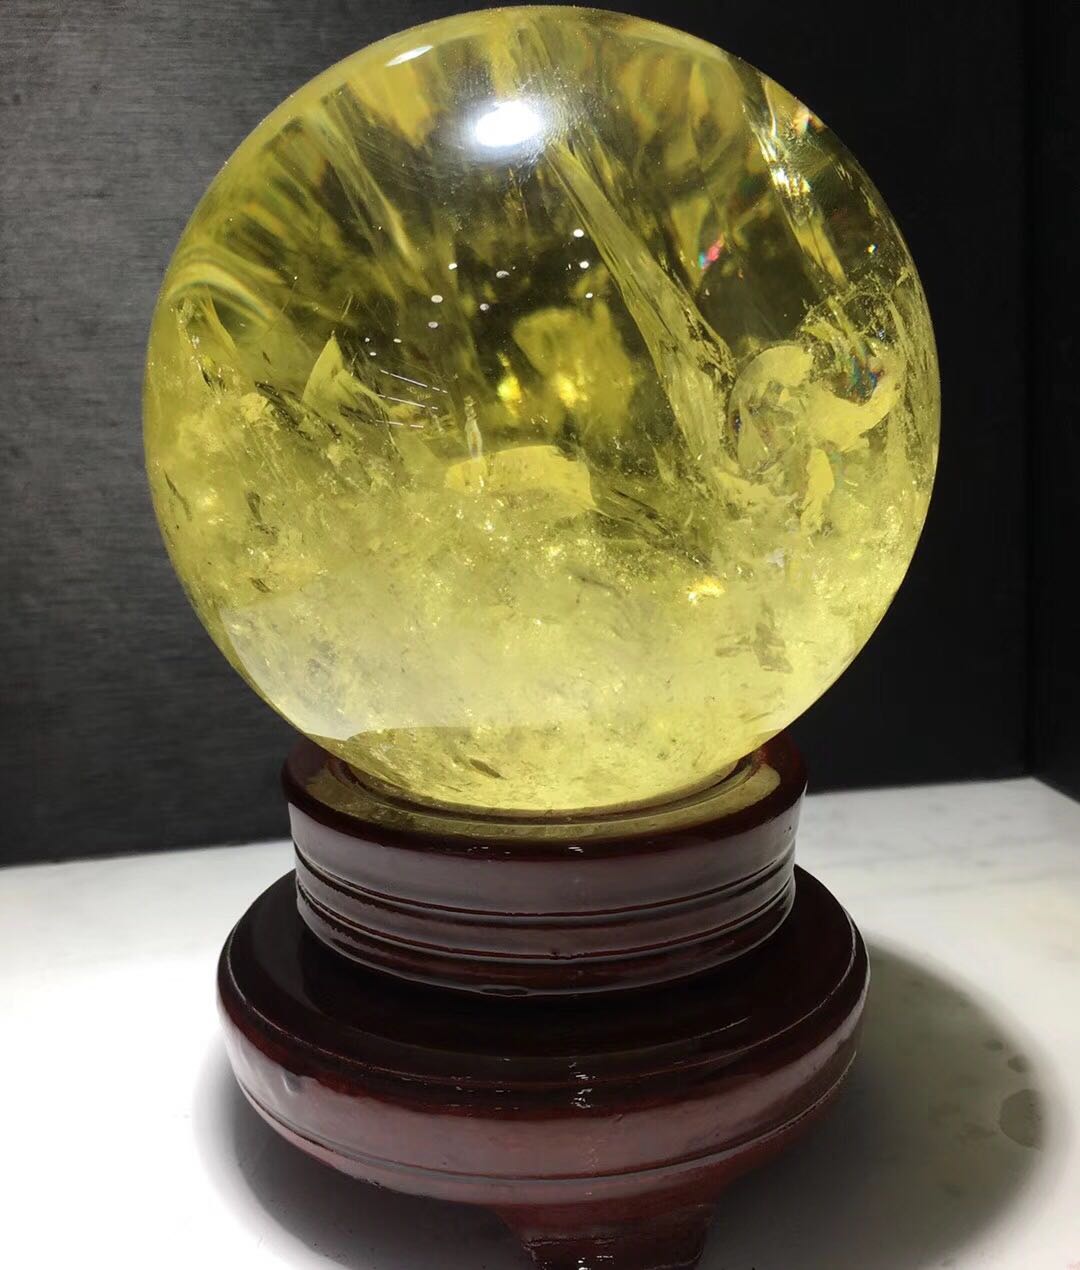 黄水晶球摆件天然巴西黄晶球晶体透明11厘米1.8kg